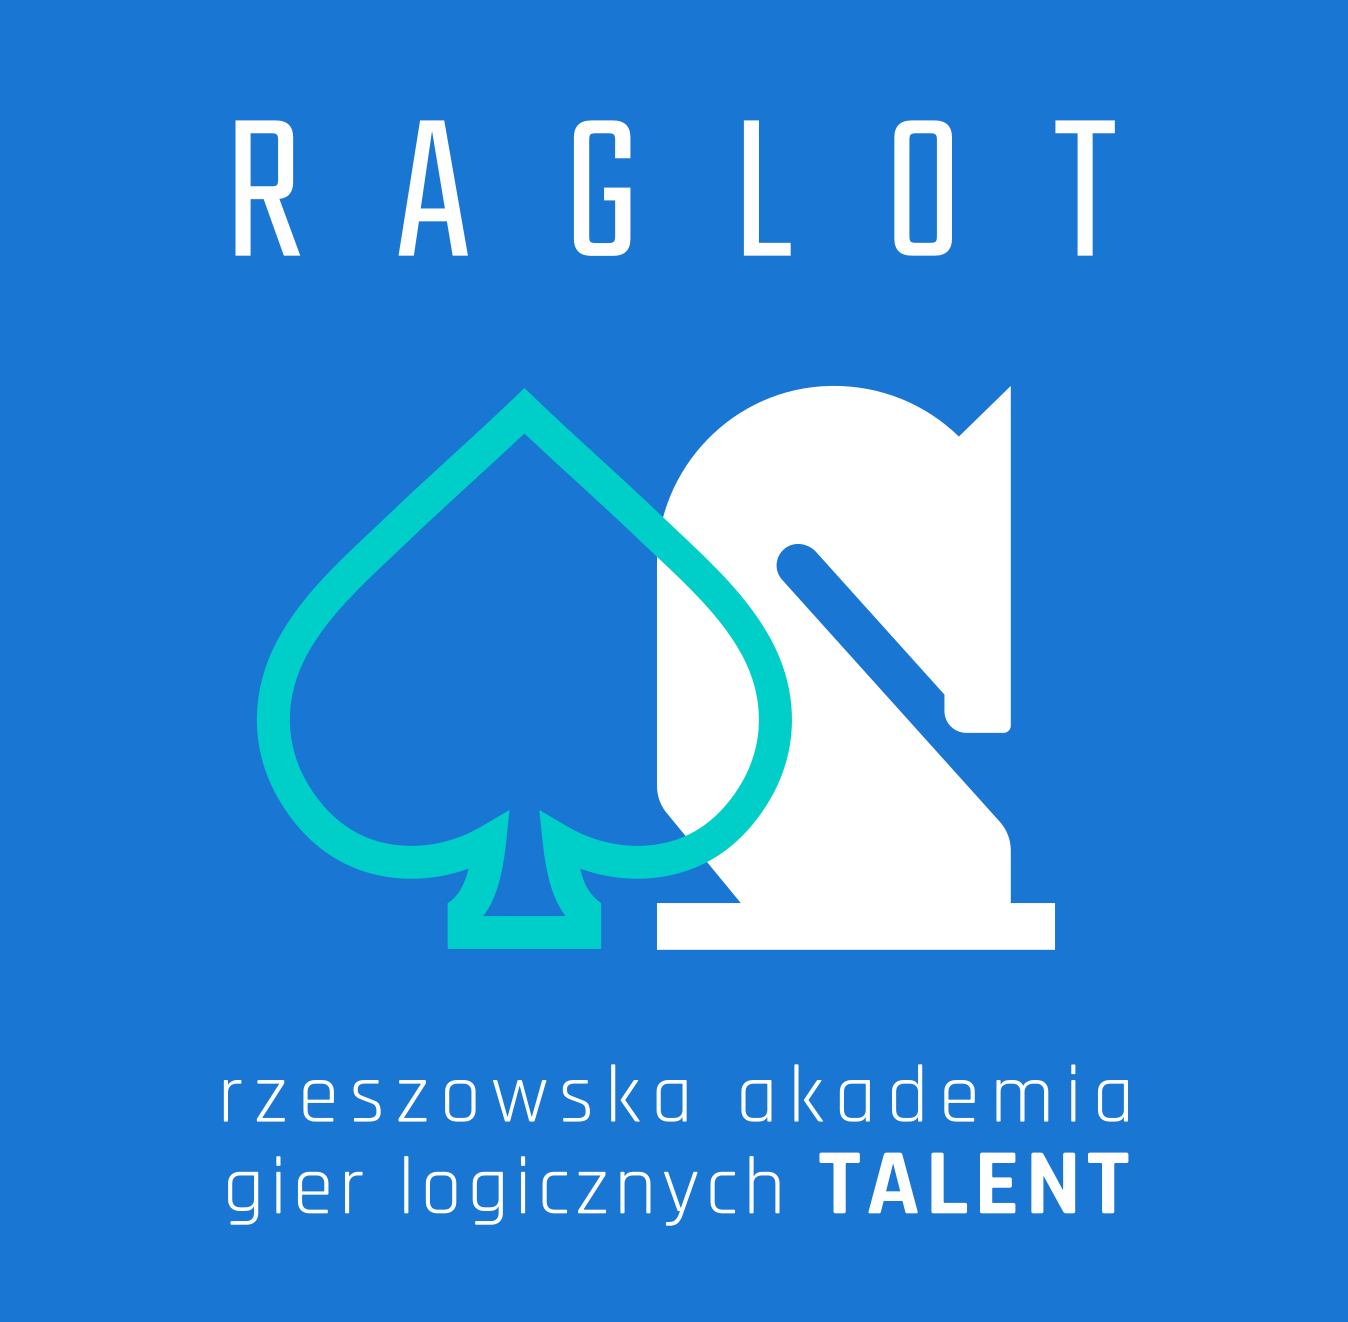 Raglot